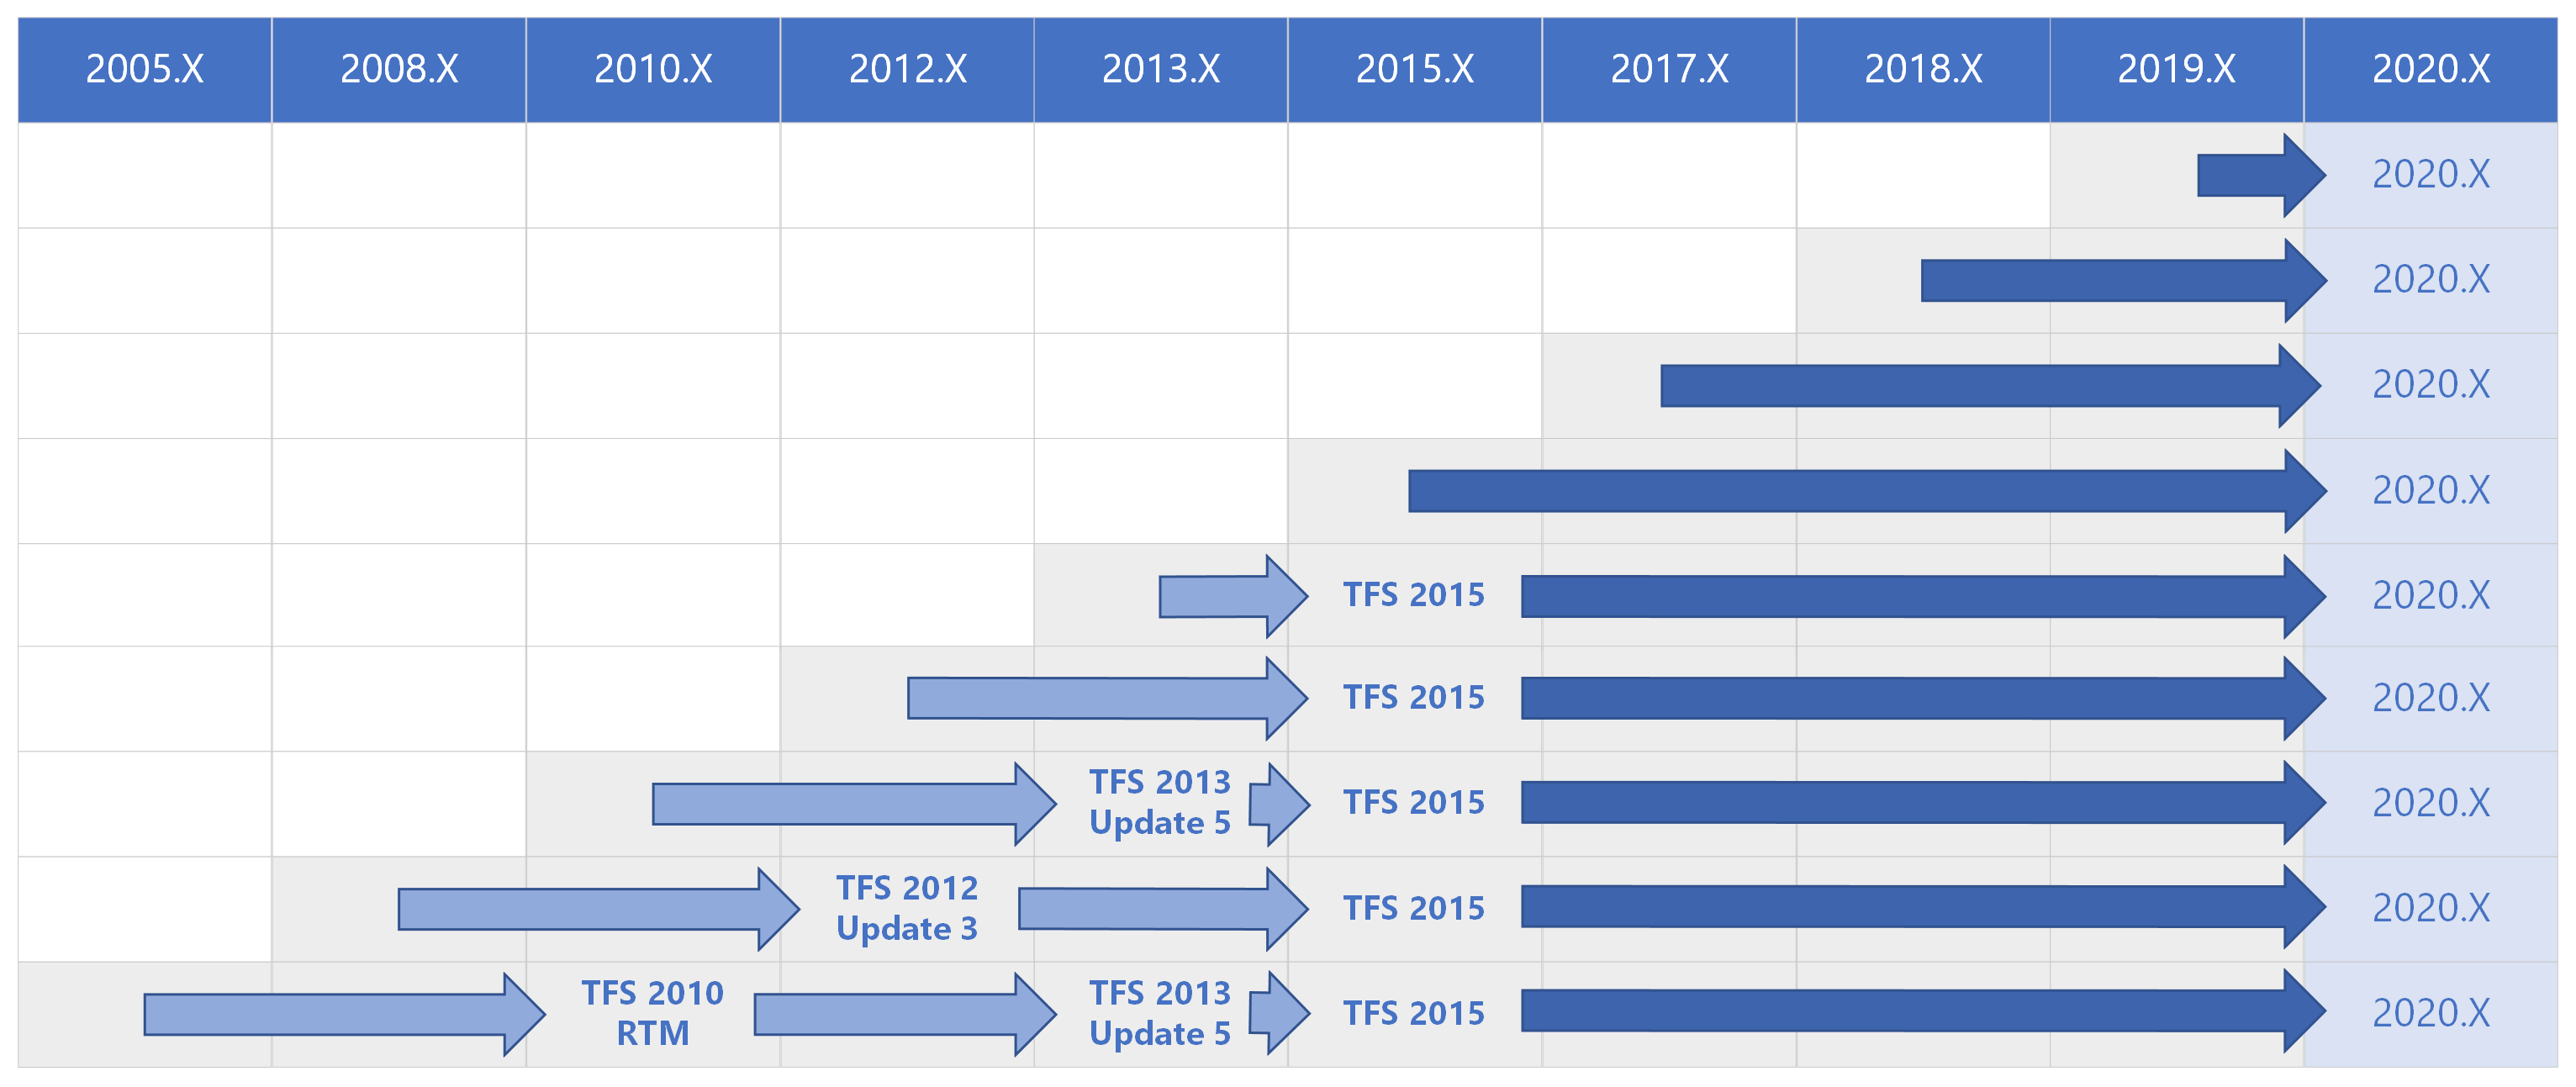 Таблица путей обновления Azure DevOps 2020 для всех предыдущих версий.